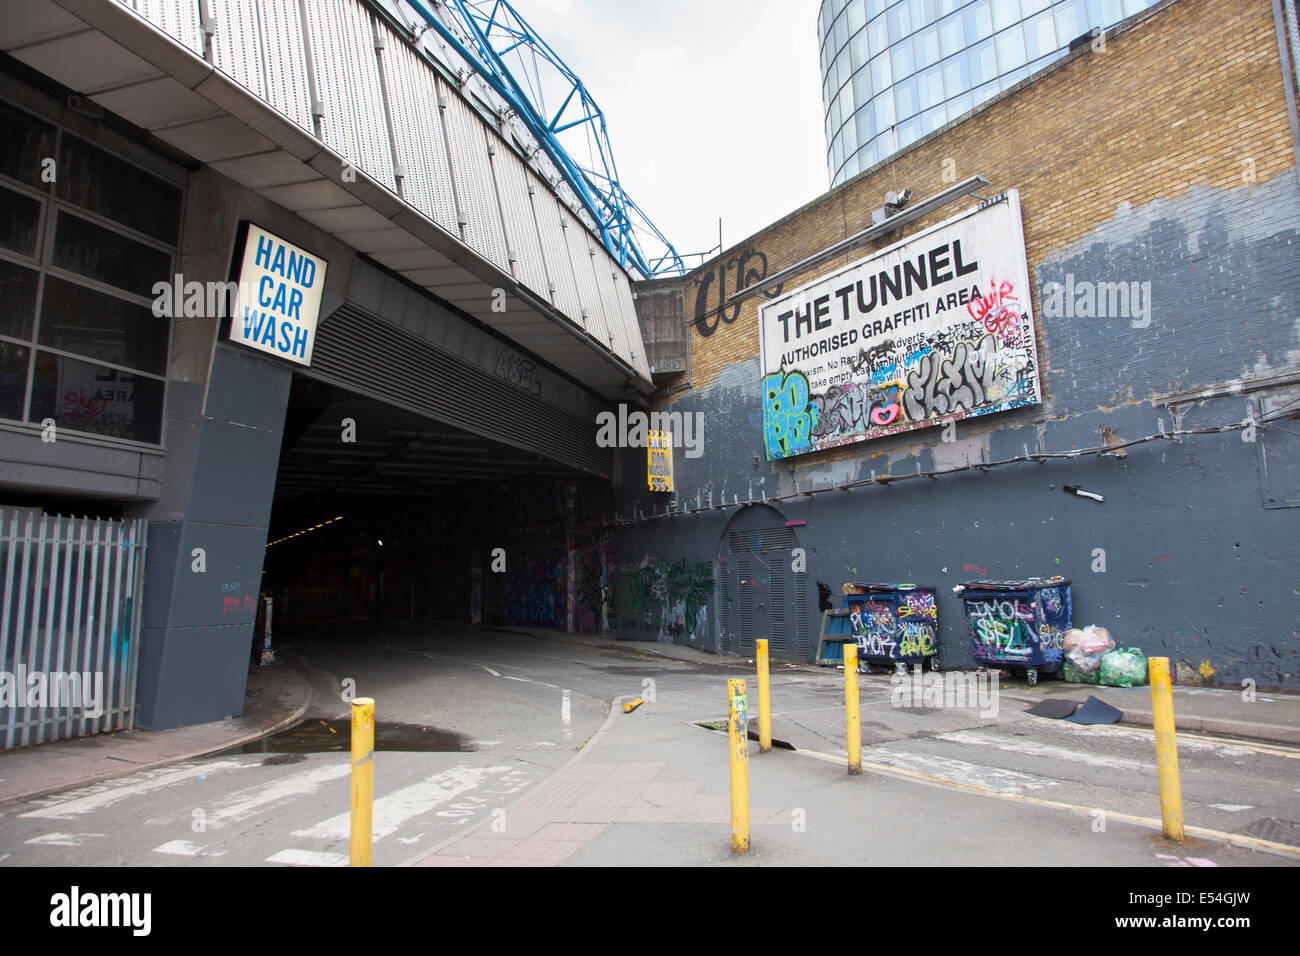 Graffitis autorisés tunnel dans Leake Street, Londres Banque D'Images